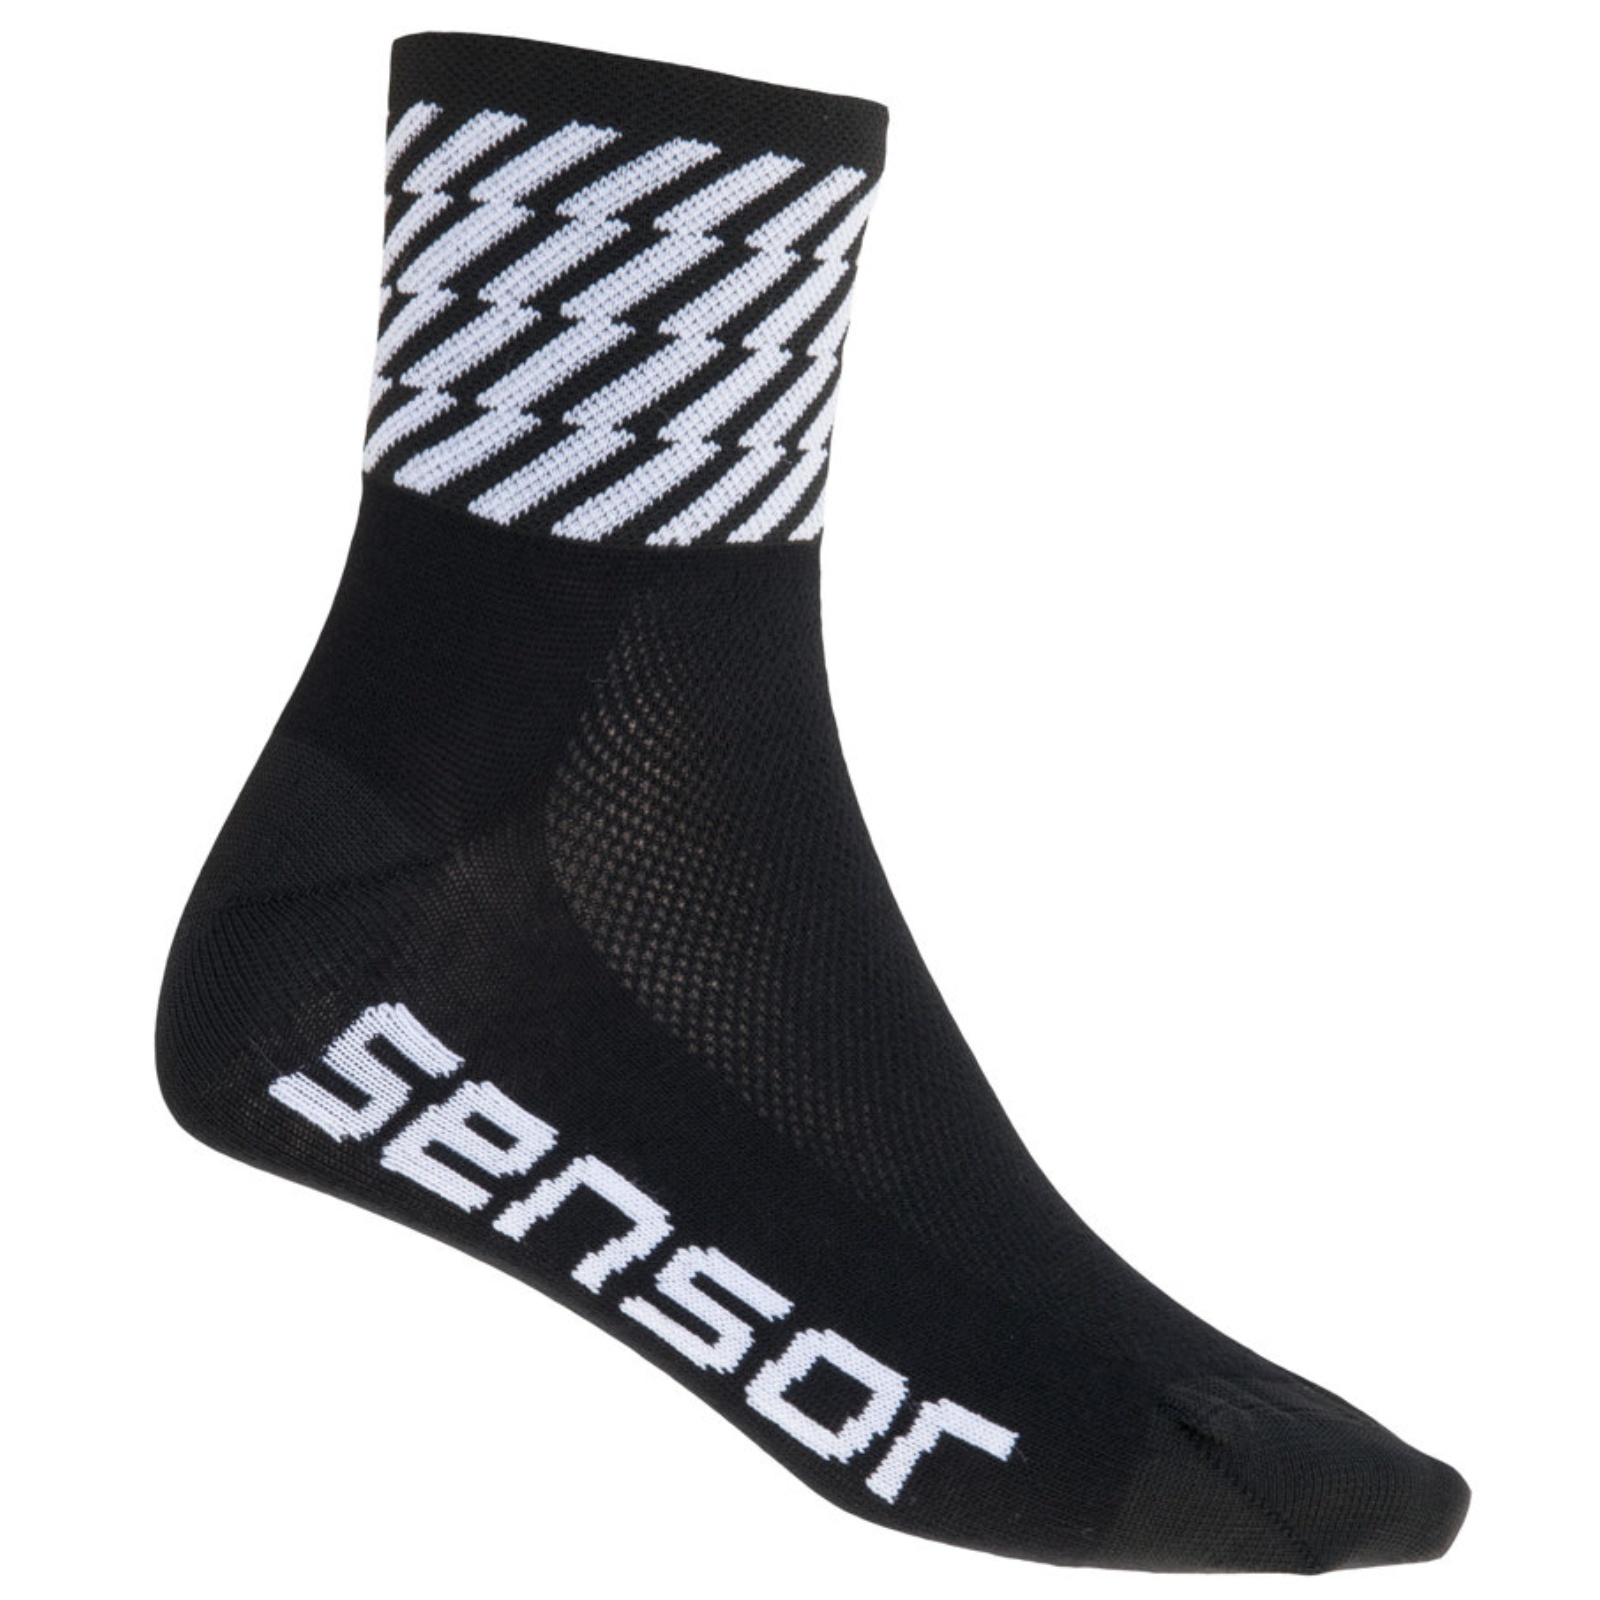 Sensor ponožky RACE FLASH černá - 6-8